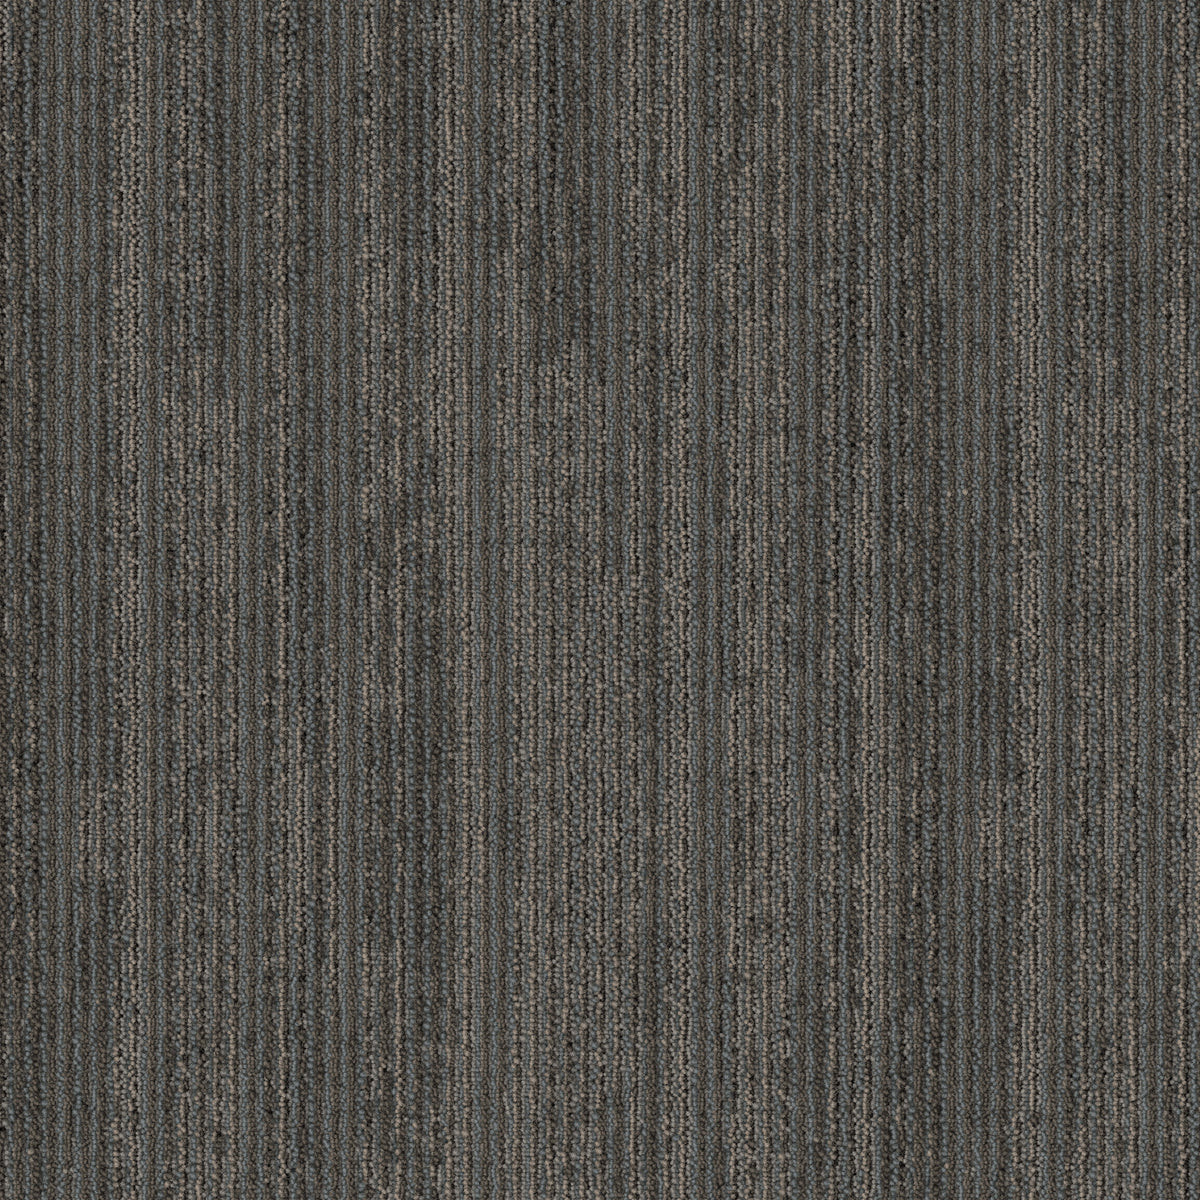 Mohawk Group - Artisanal - Blended Twist - Carpet Tile - Shell